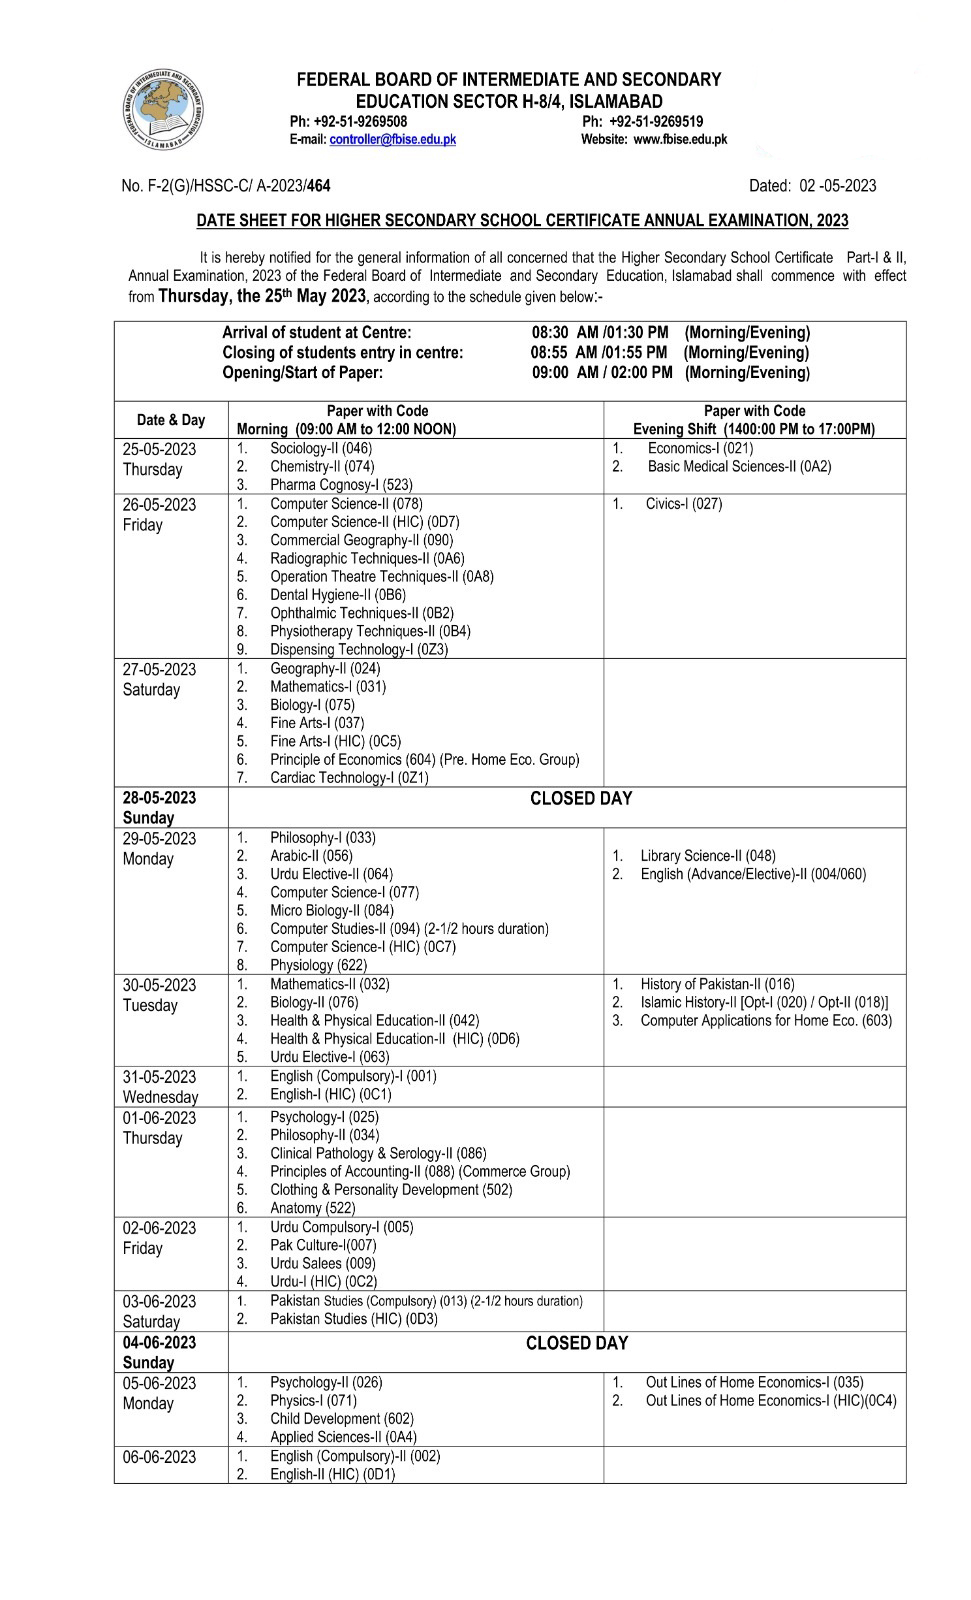 FBISE Date Sheet 2023 Class 11 Federal Board